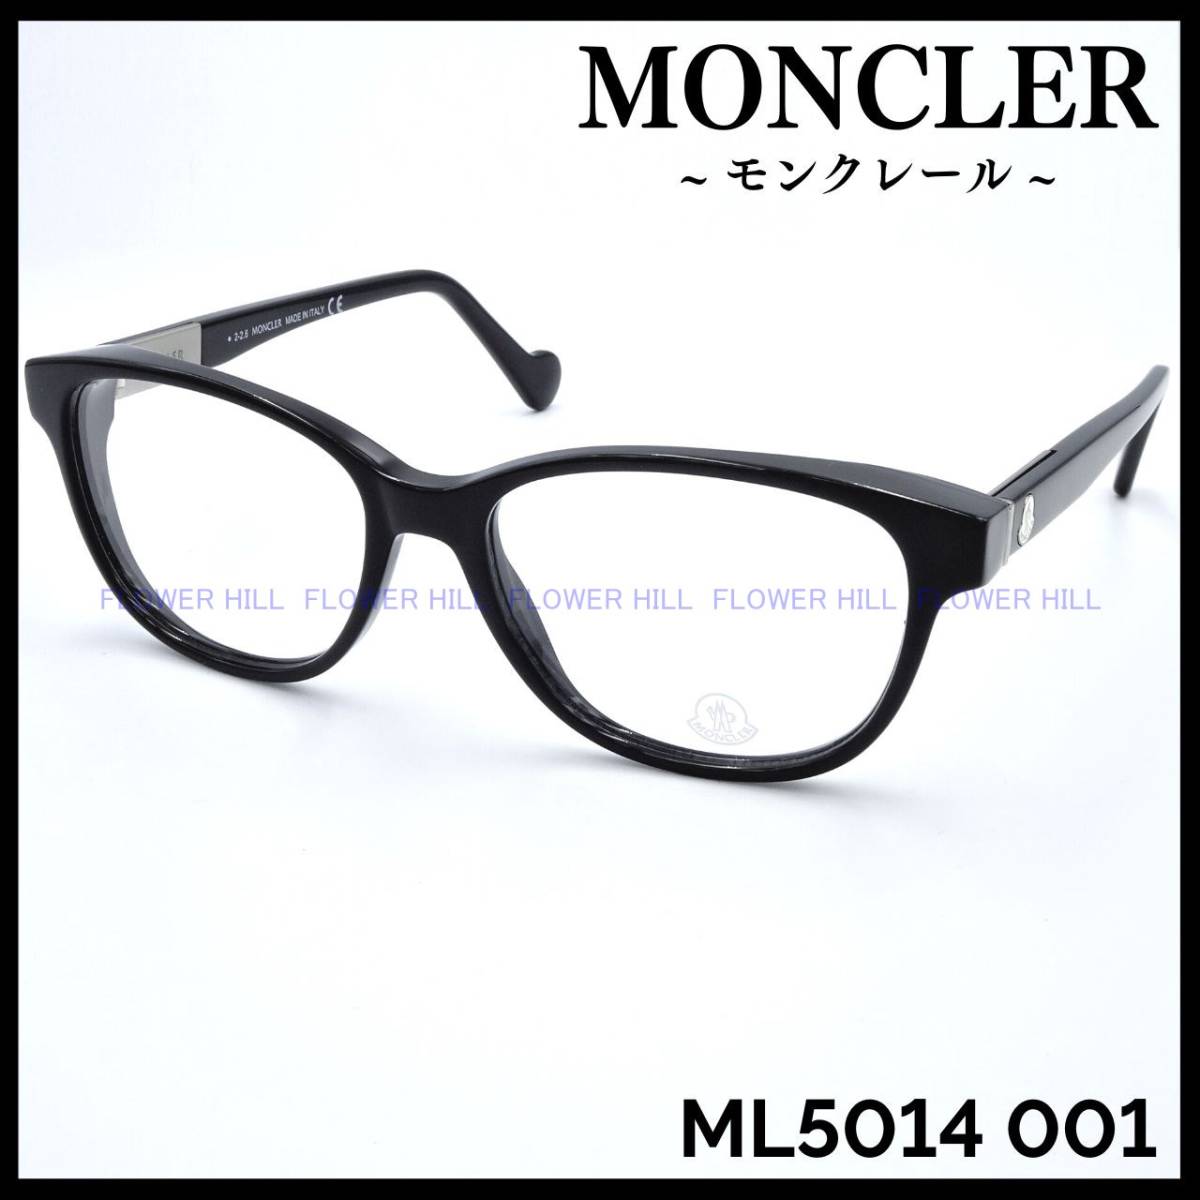 【新品・送料無料】モンクレール MONCLER メガネ フレーム ML5014 001 ブラック イタリア製 メンズ レディース ウェリントン